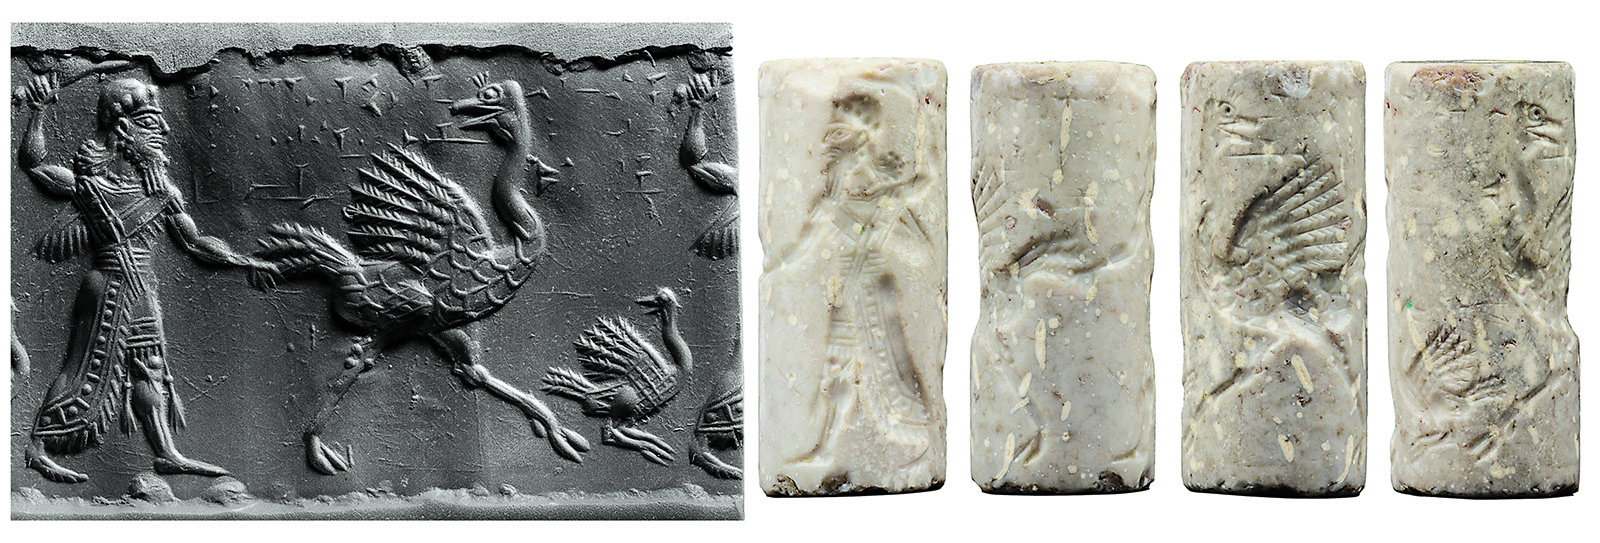 Mesopotamia’s Art of the Seal